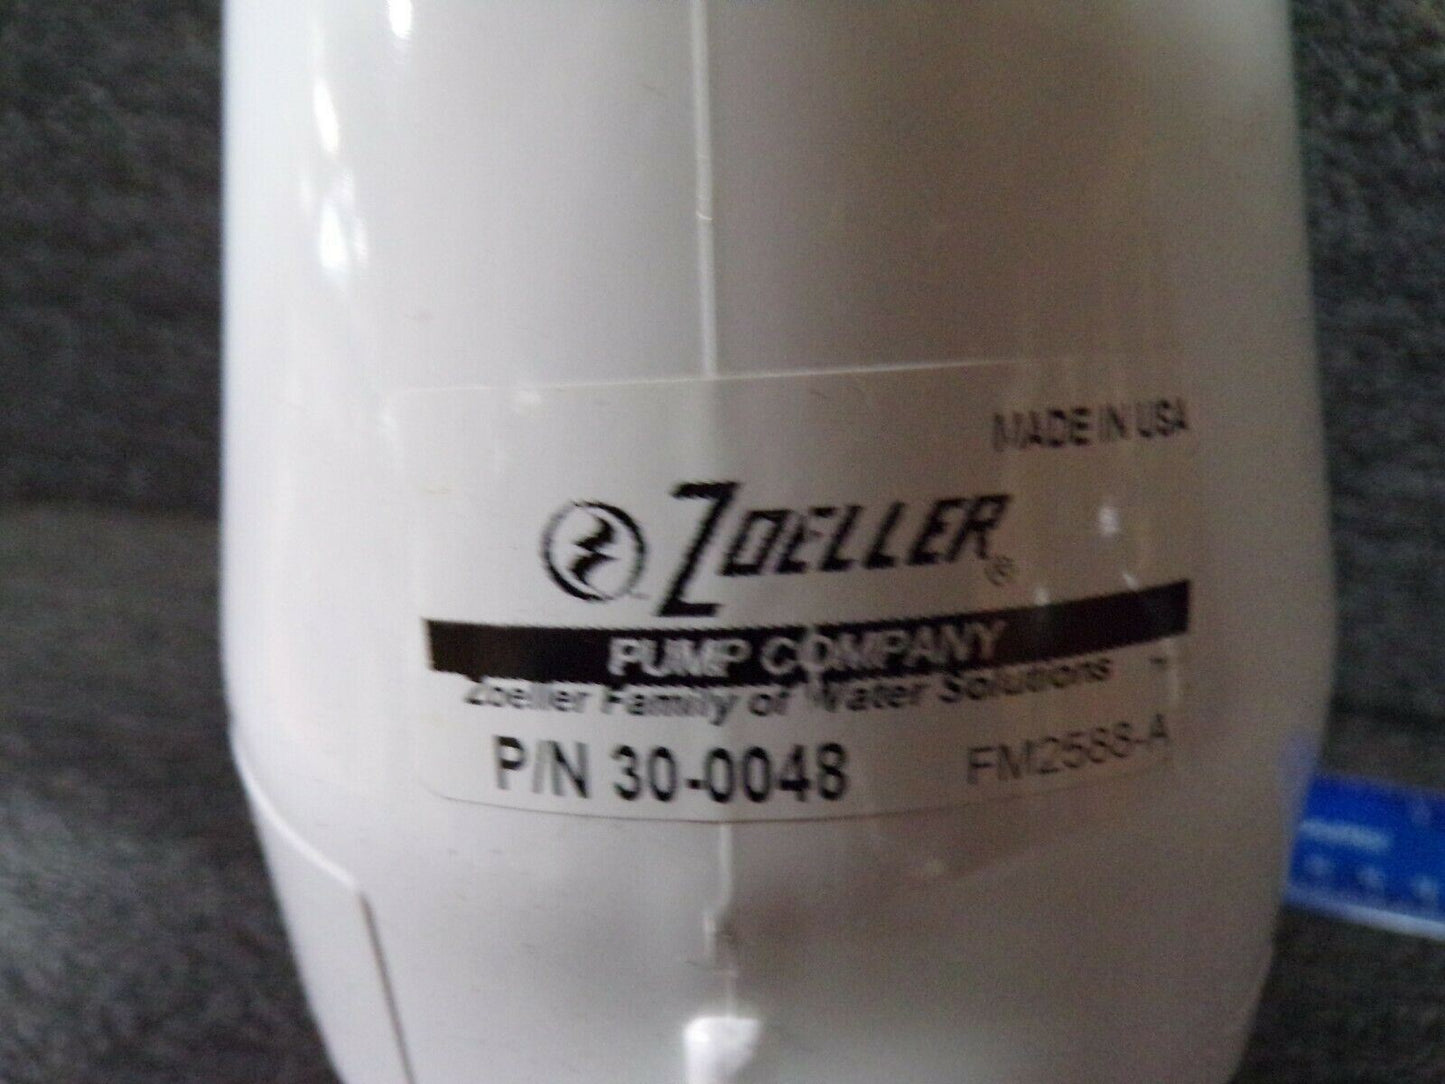 ZOELLER 30-0048 Swing Check Valve, PVC, 2", Solvent Weld (184505836336-BT58)